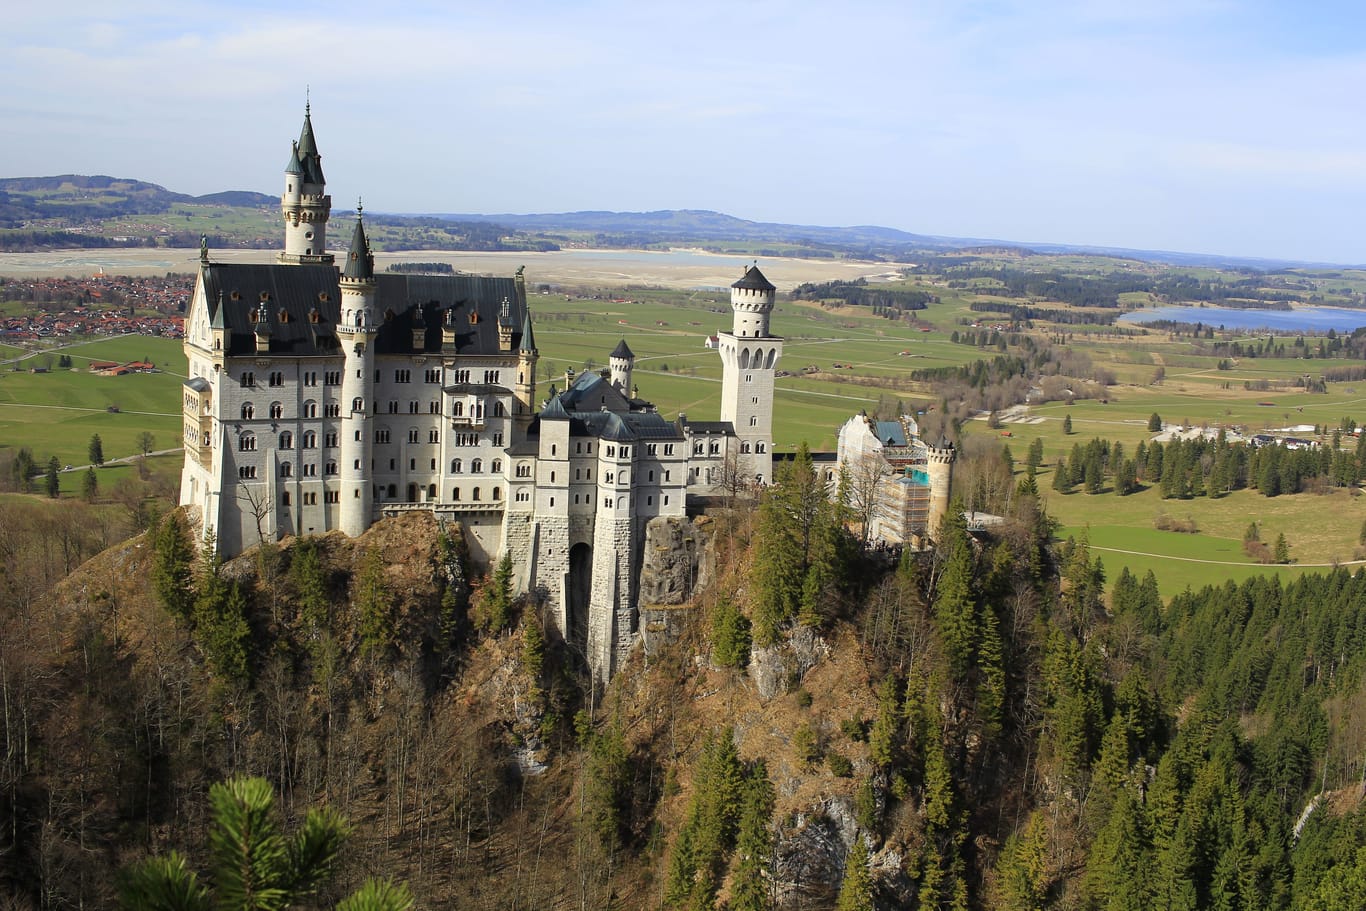 Burg Eltz castle in Rhineland-Palatinate state, Germany.